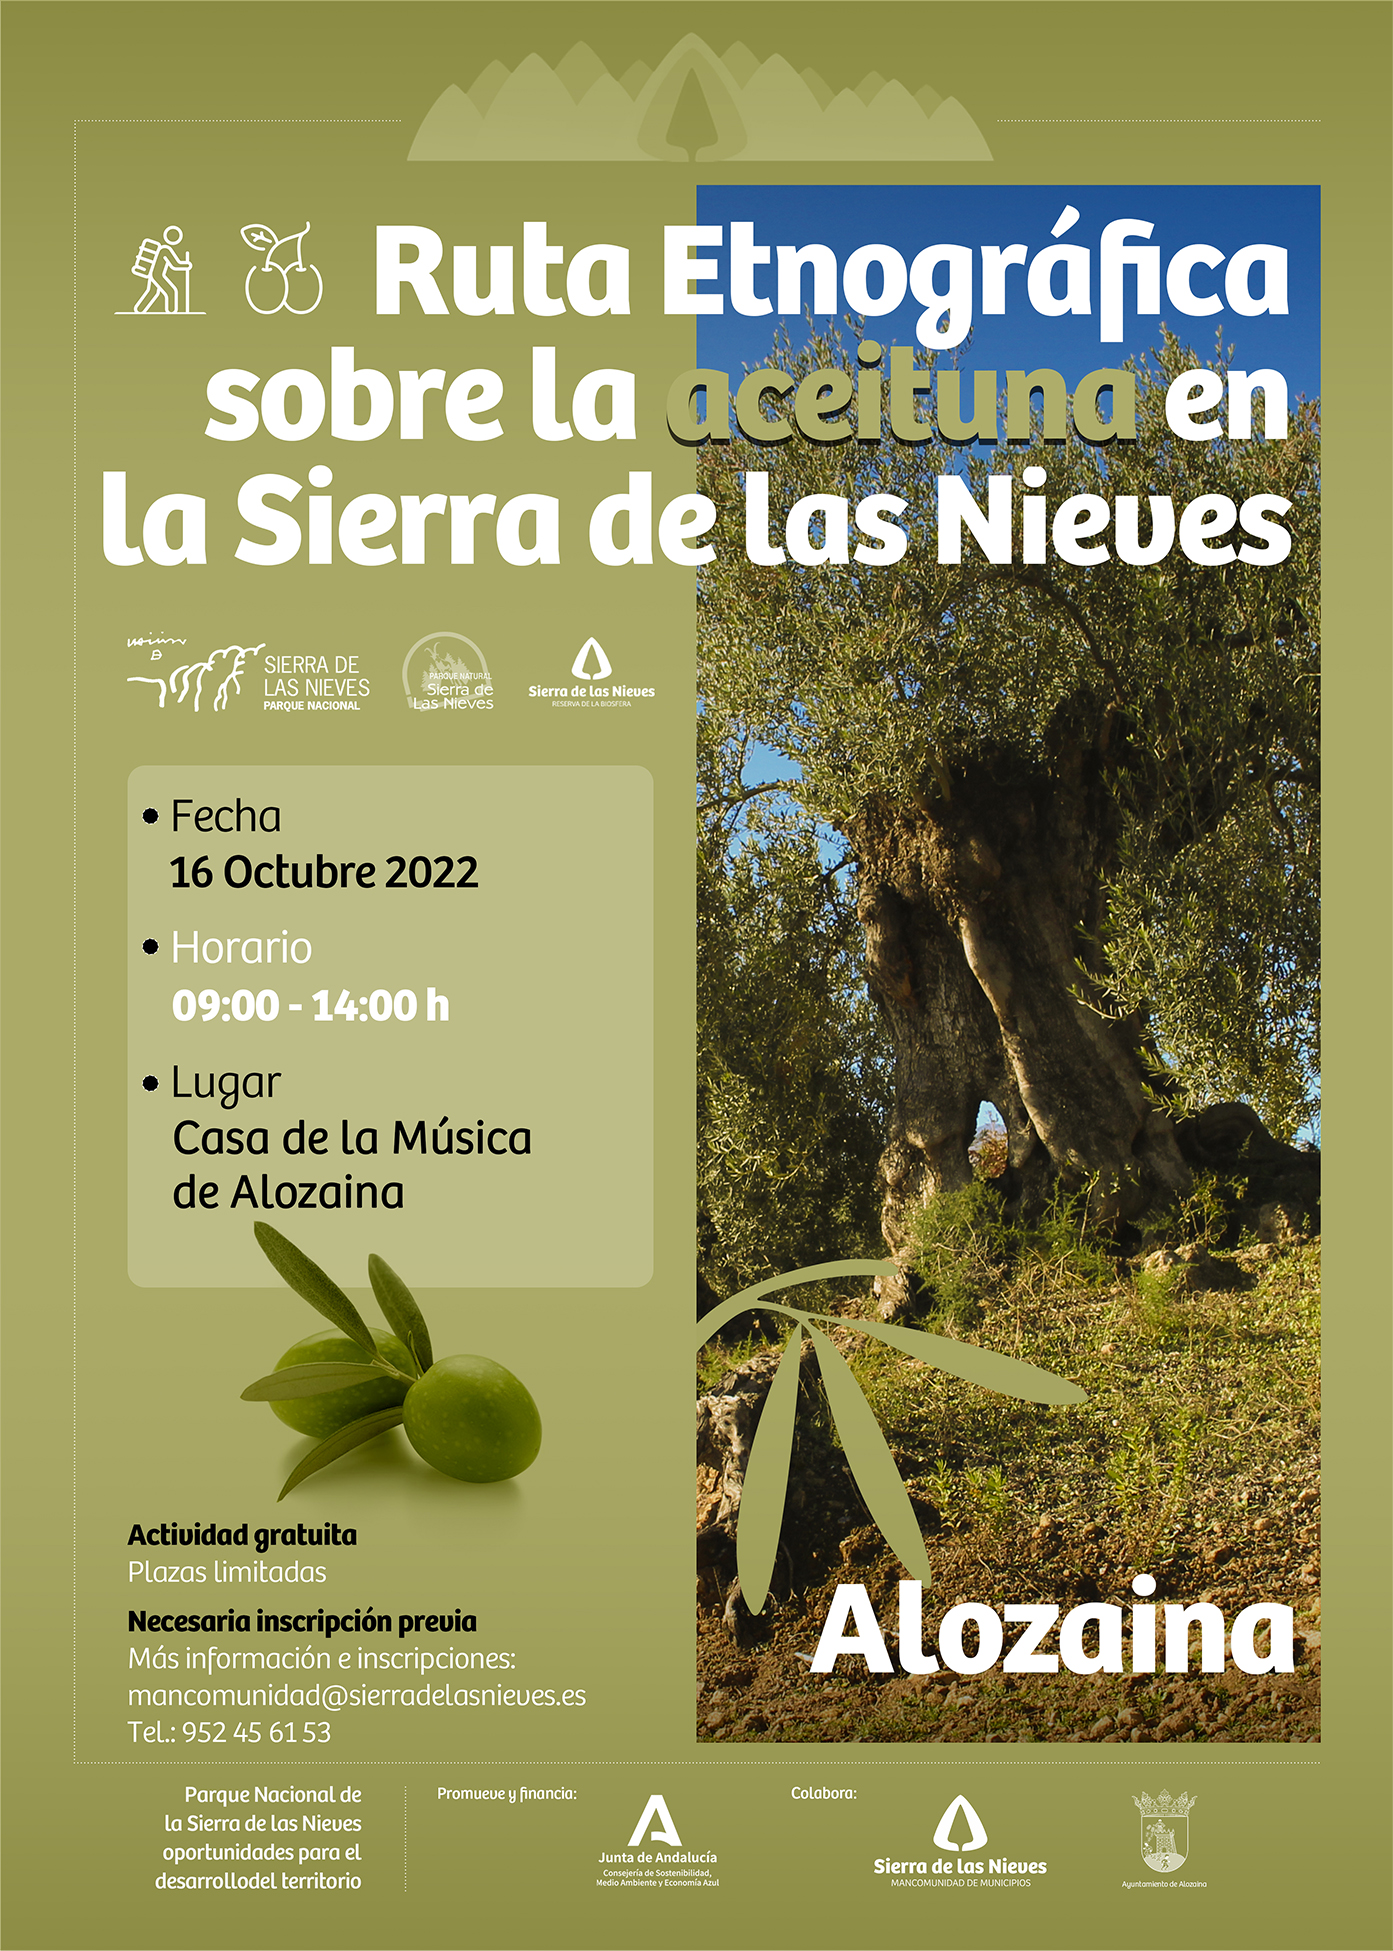 Ruta Etnográfica sobre la aceituna en la Sierra de las Nieves - Fecha 16 de Octubre 2022 - Lugar: Casa de la Música (Alozaina)